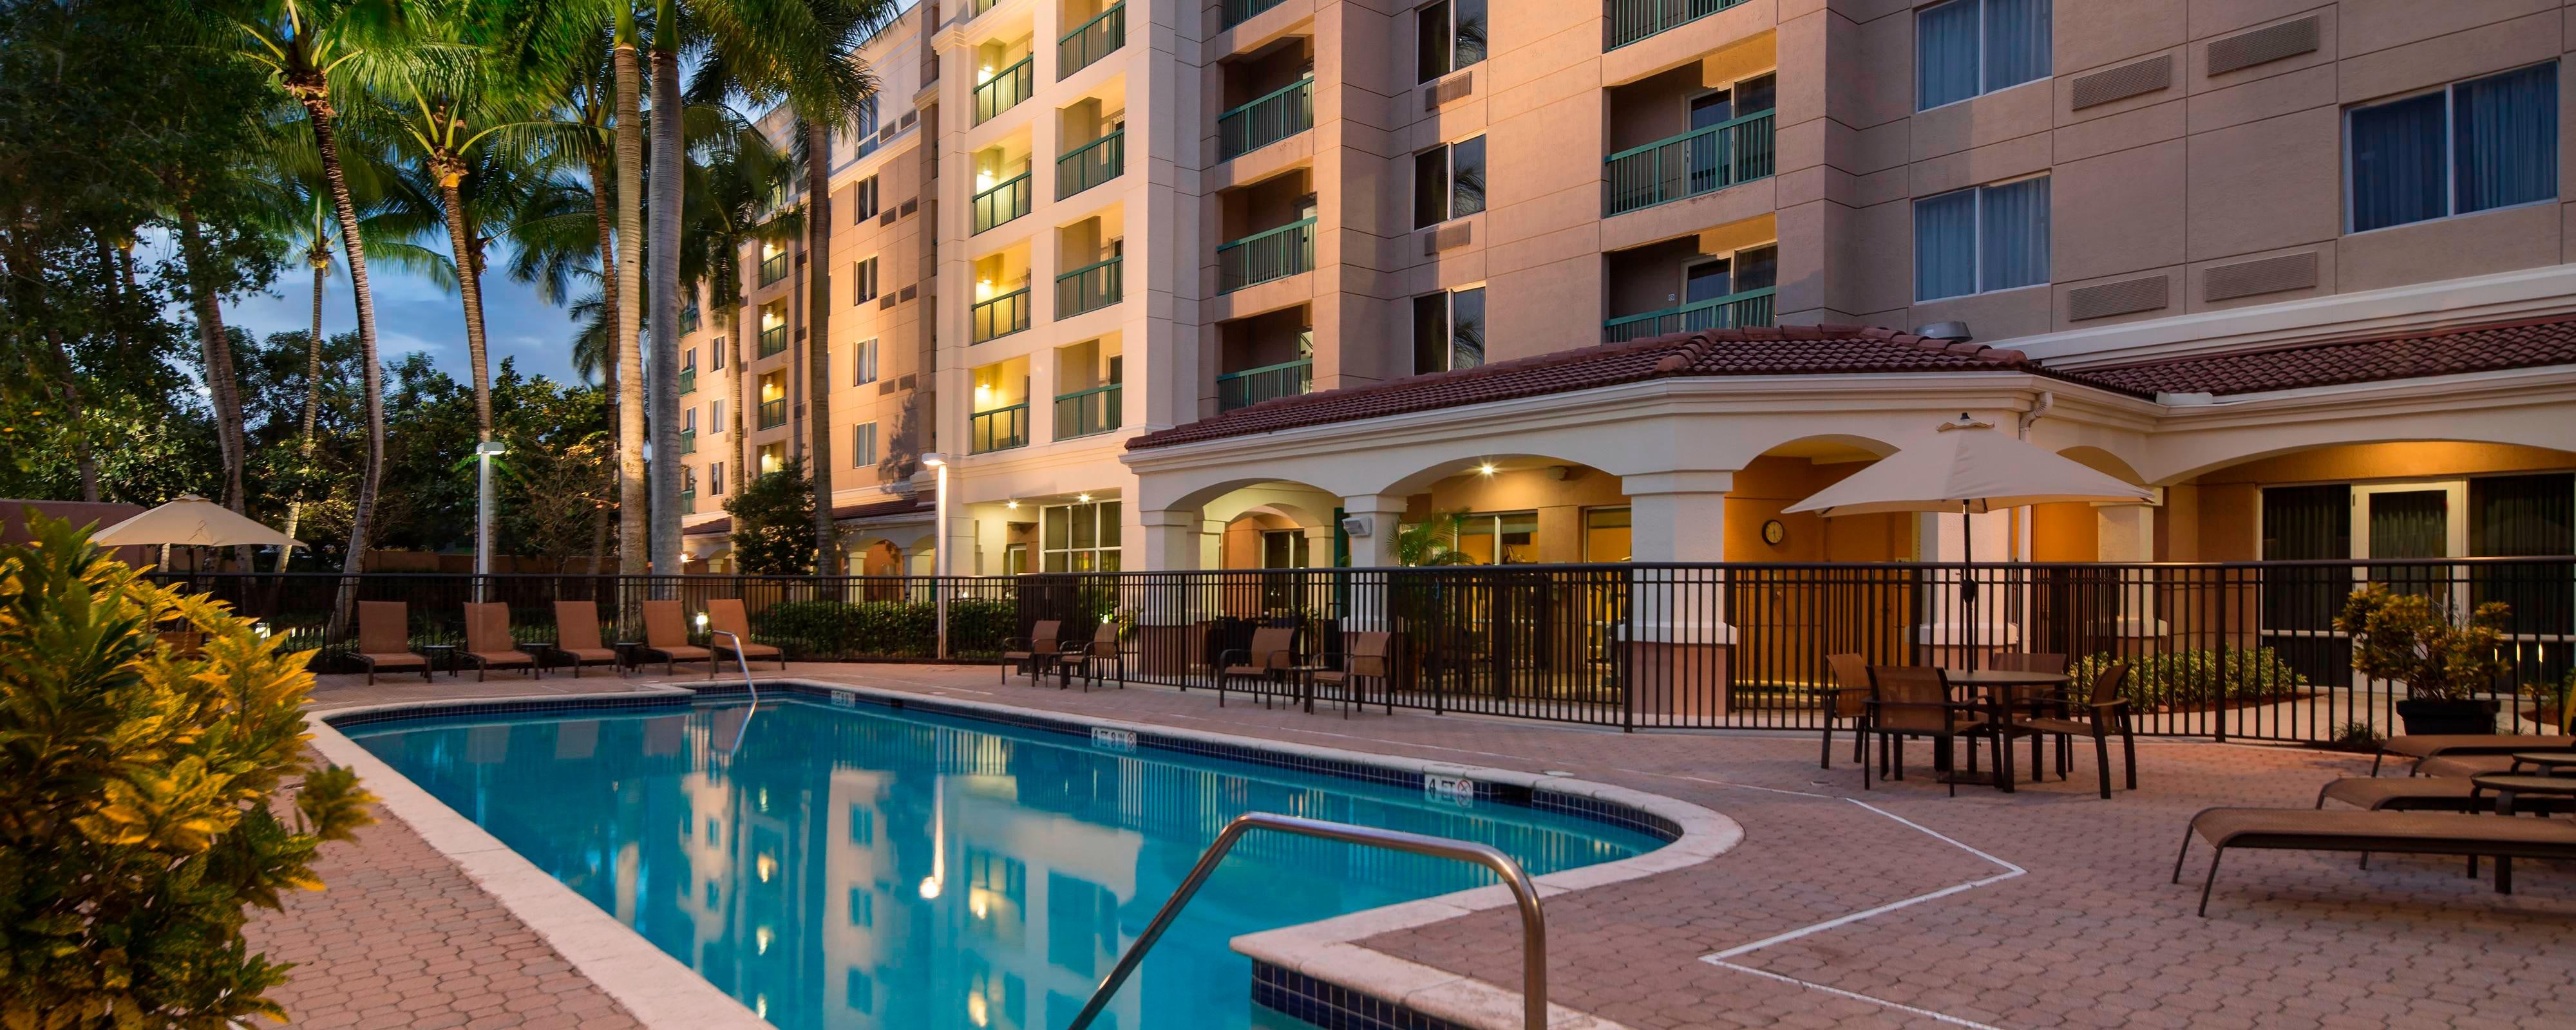 Hoteles Cerca Al Sawgrass Mall | Hoteles Cerca De Weston FL